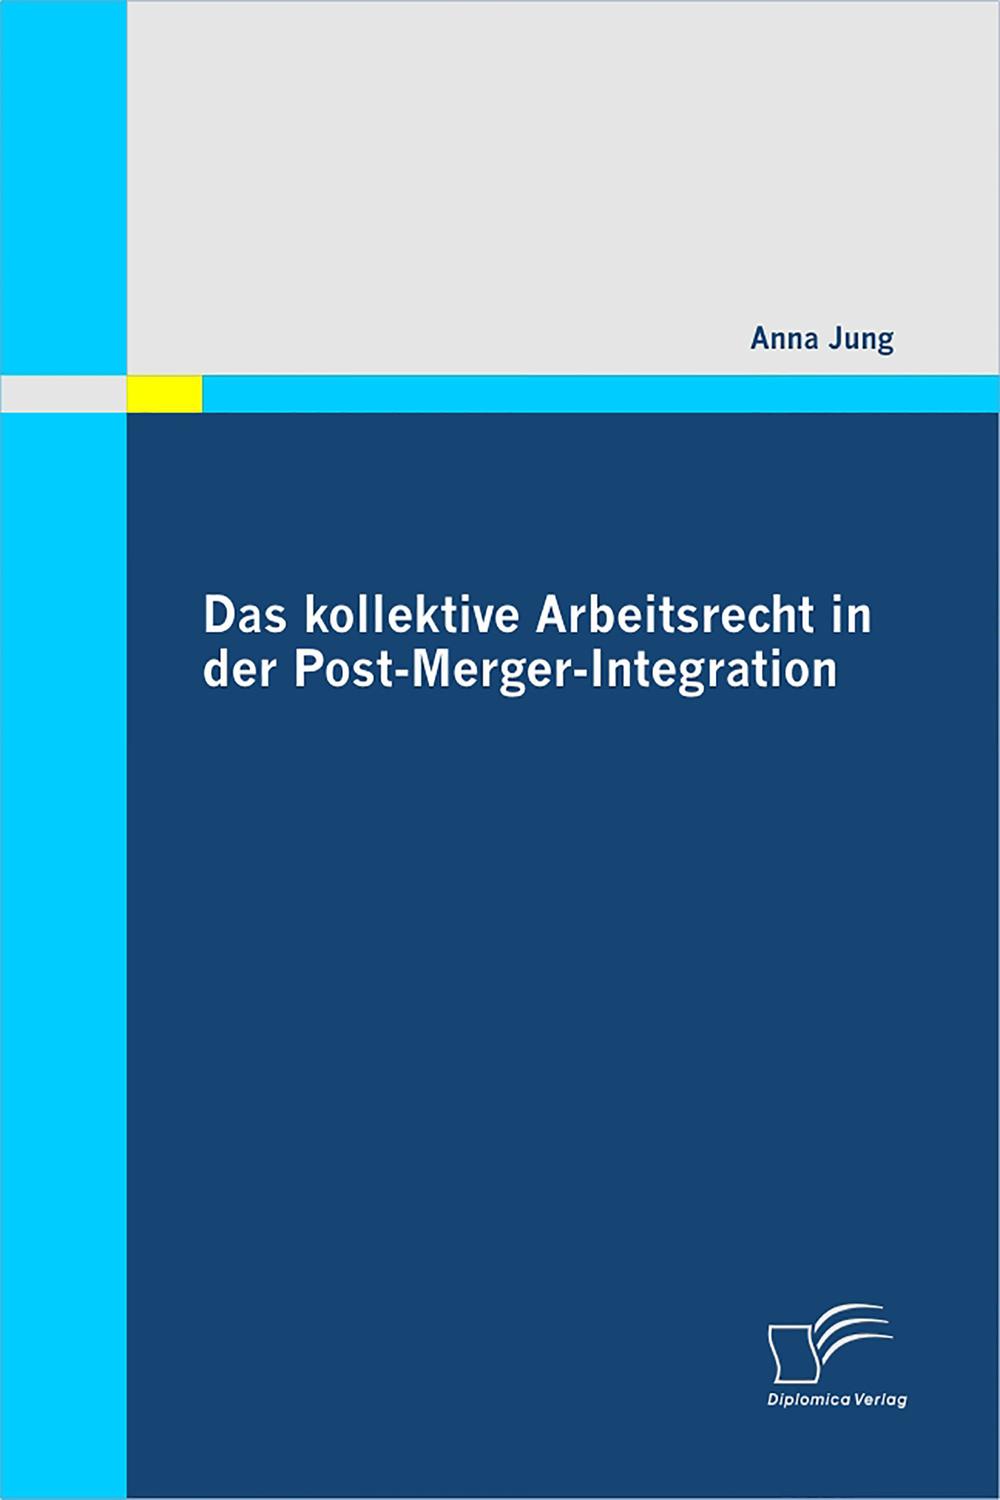 Das kollektive Arbeitsrecht in der Post-Merger-Integration - Anna Jung